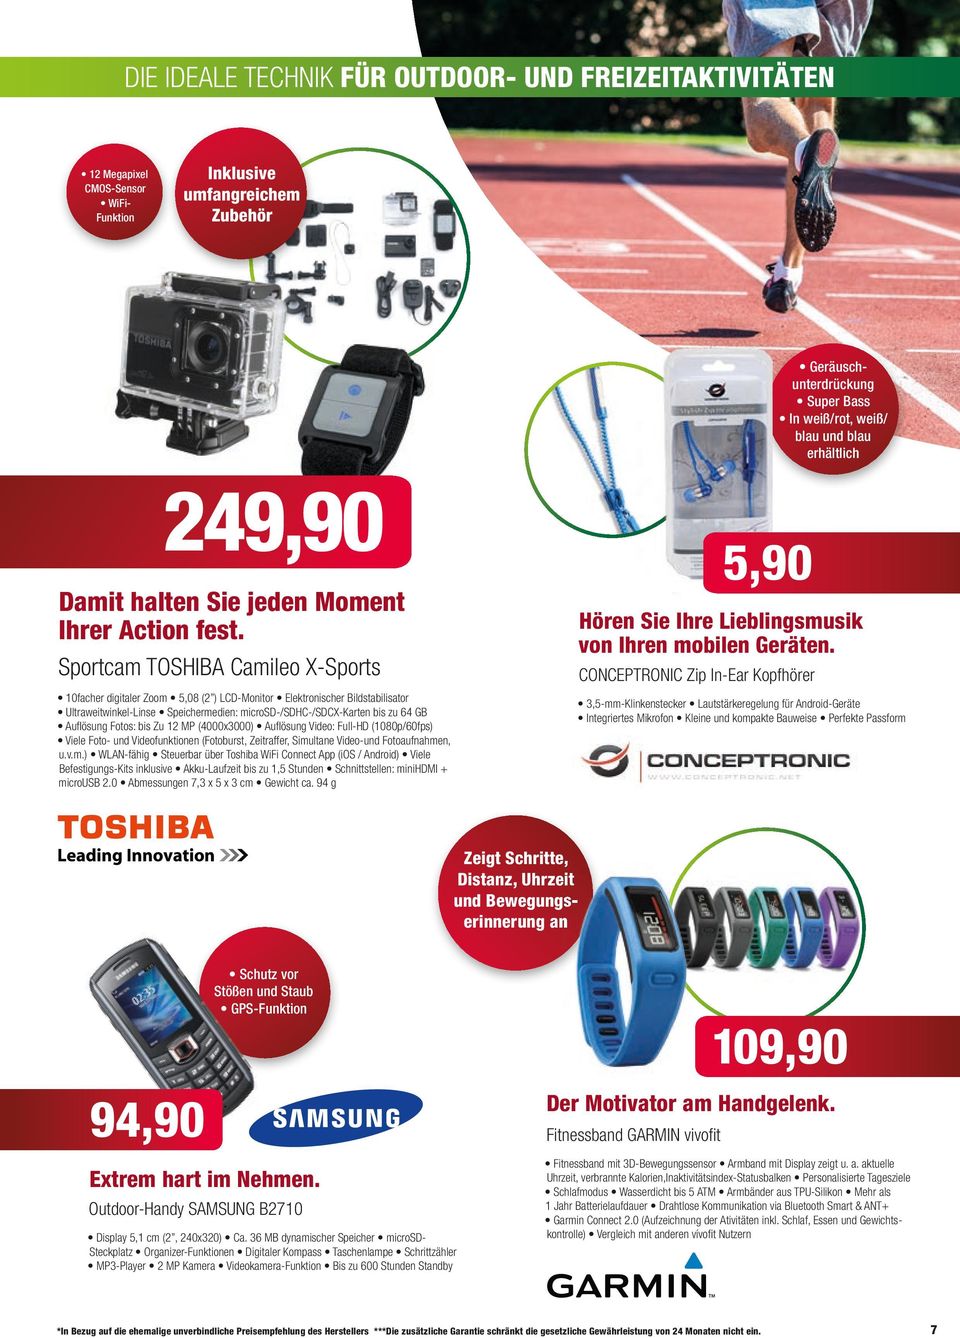 Sportcam TOSHIBA Camileo X-Sports 10facher digitaler Zoom 5,08 (2 ) LCD-Monitor Elektronischer Bildstabilisator Ultraweitwinkel-Linse Speichermedien: microsd-/sdhc-/sdcx-karten bis zu 64 GB Auflösung